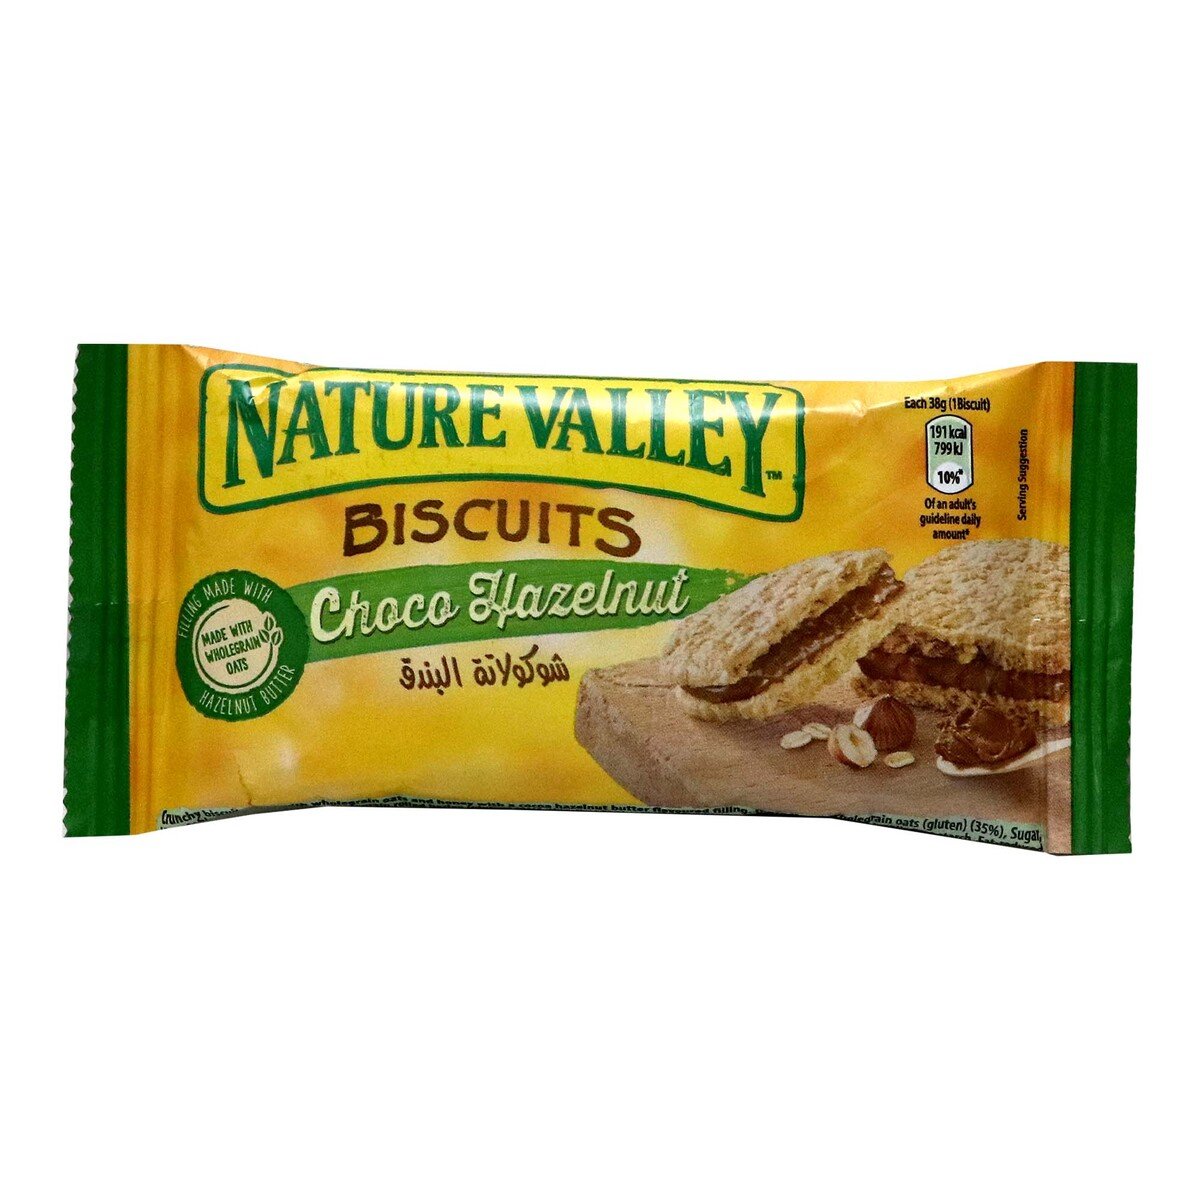 Nature Valley Biscuits Choco Hazelnut 38 g